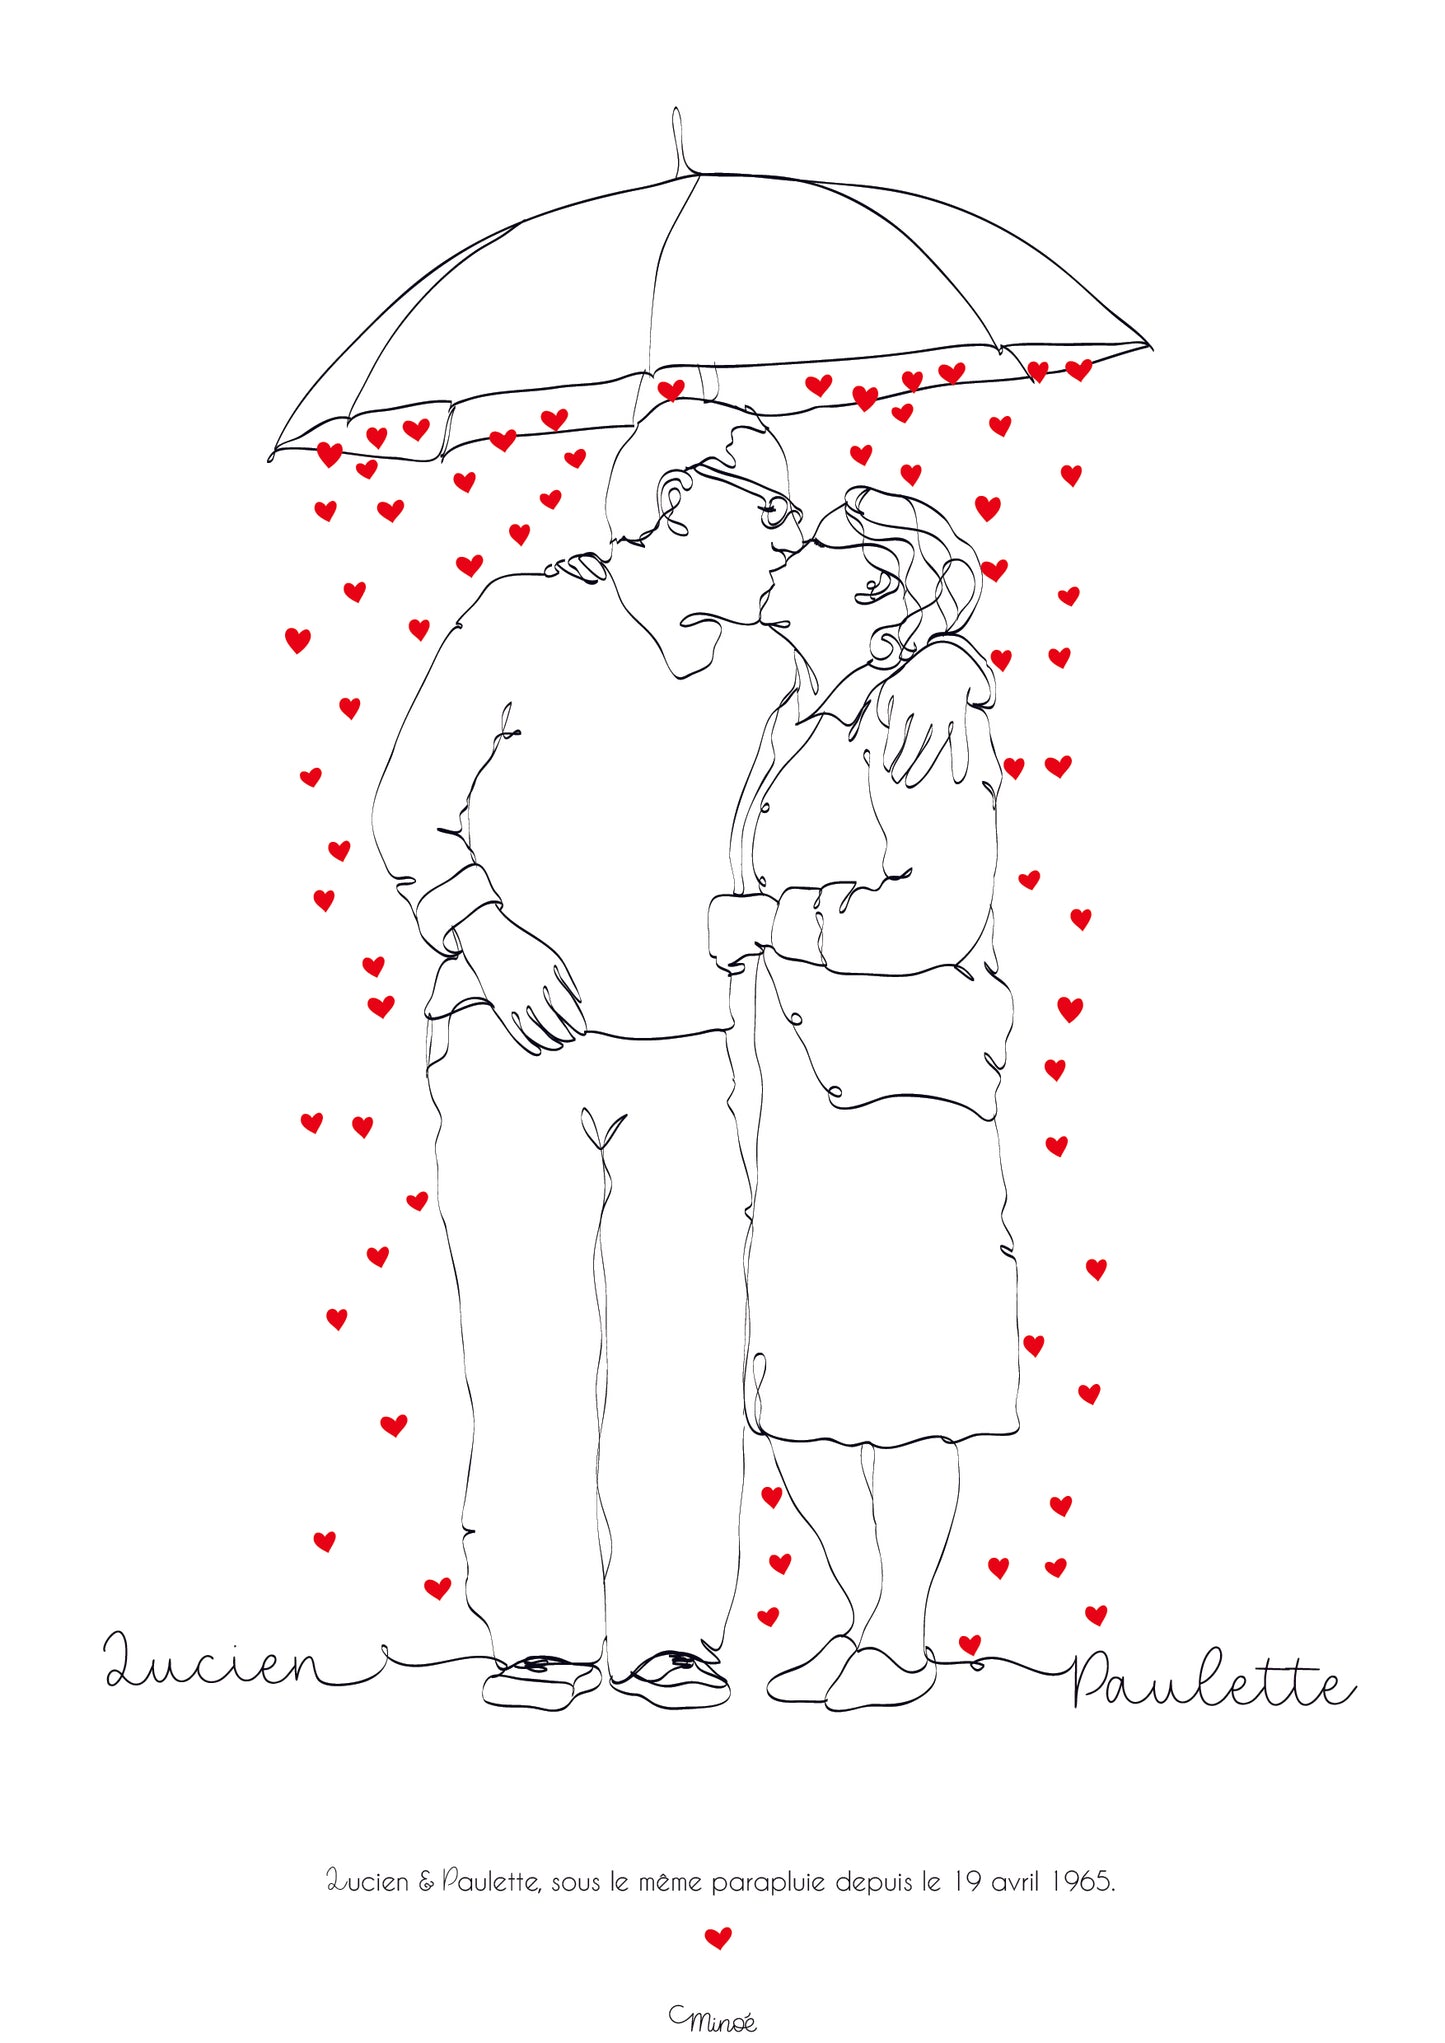 Illustration de couple - Sous le même parapluie